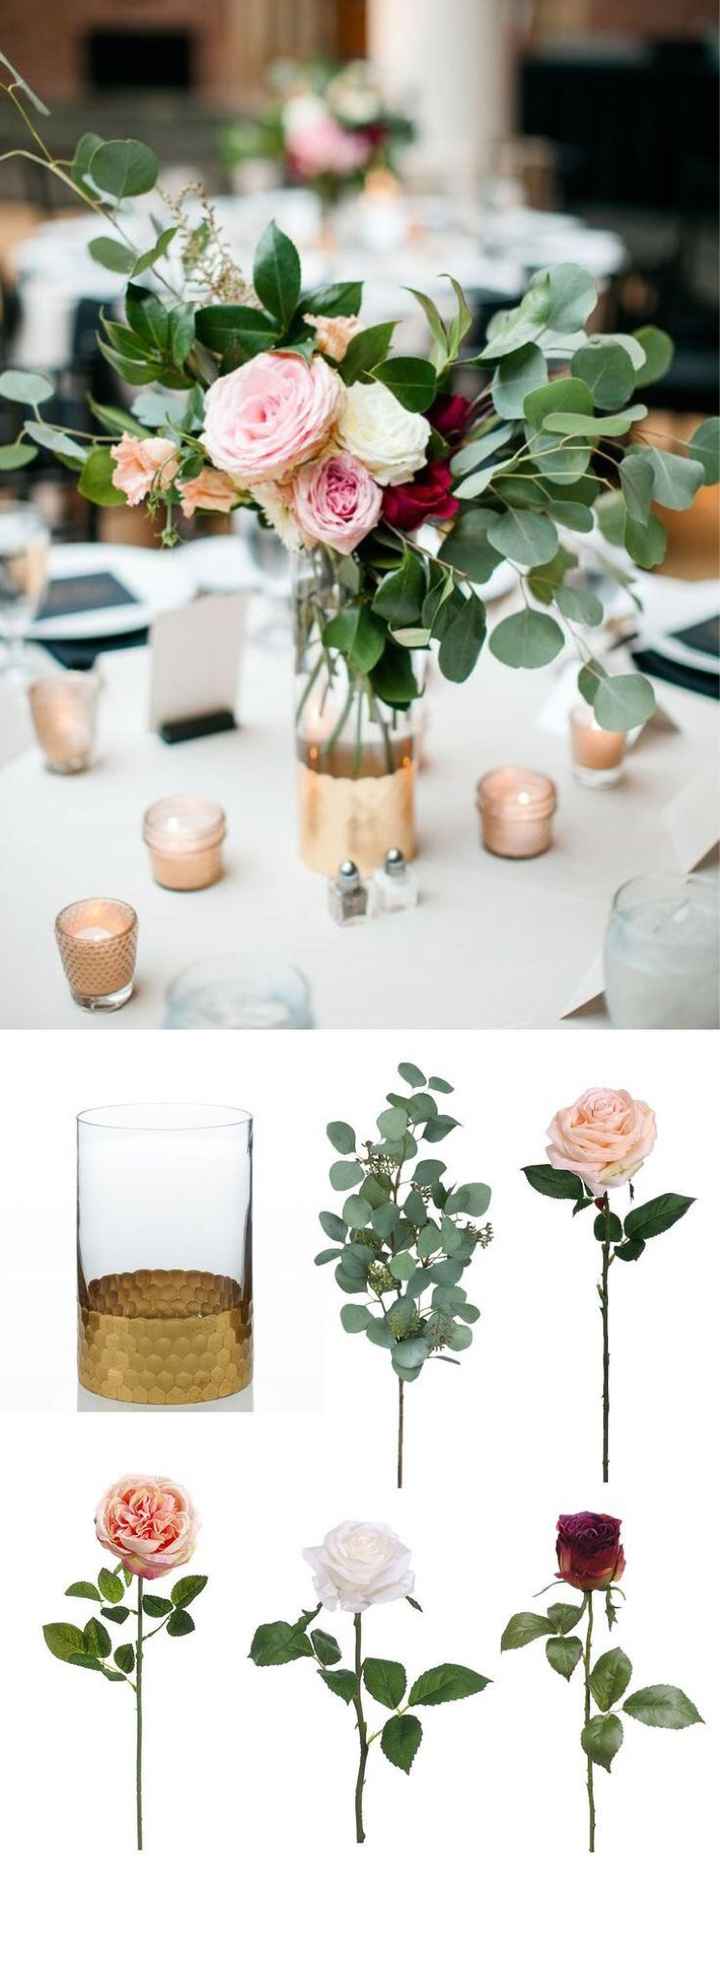  Centros de mesas com flores 😊 - 5